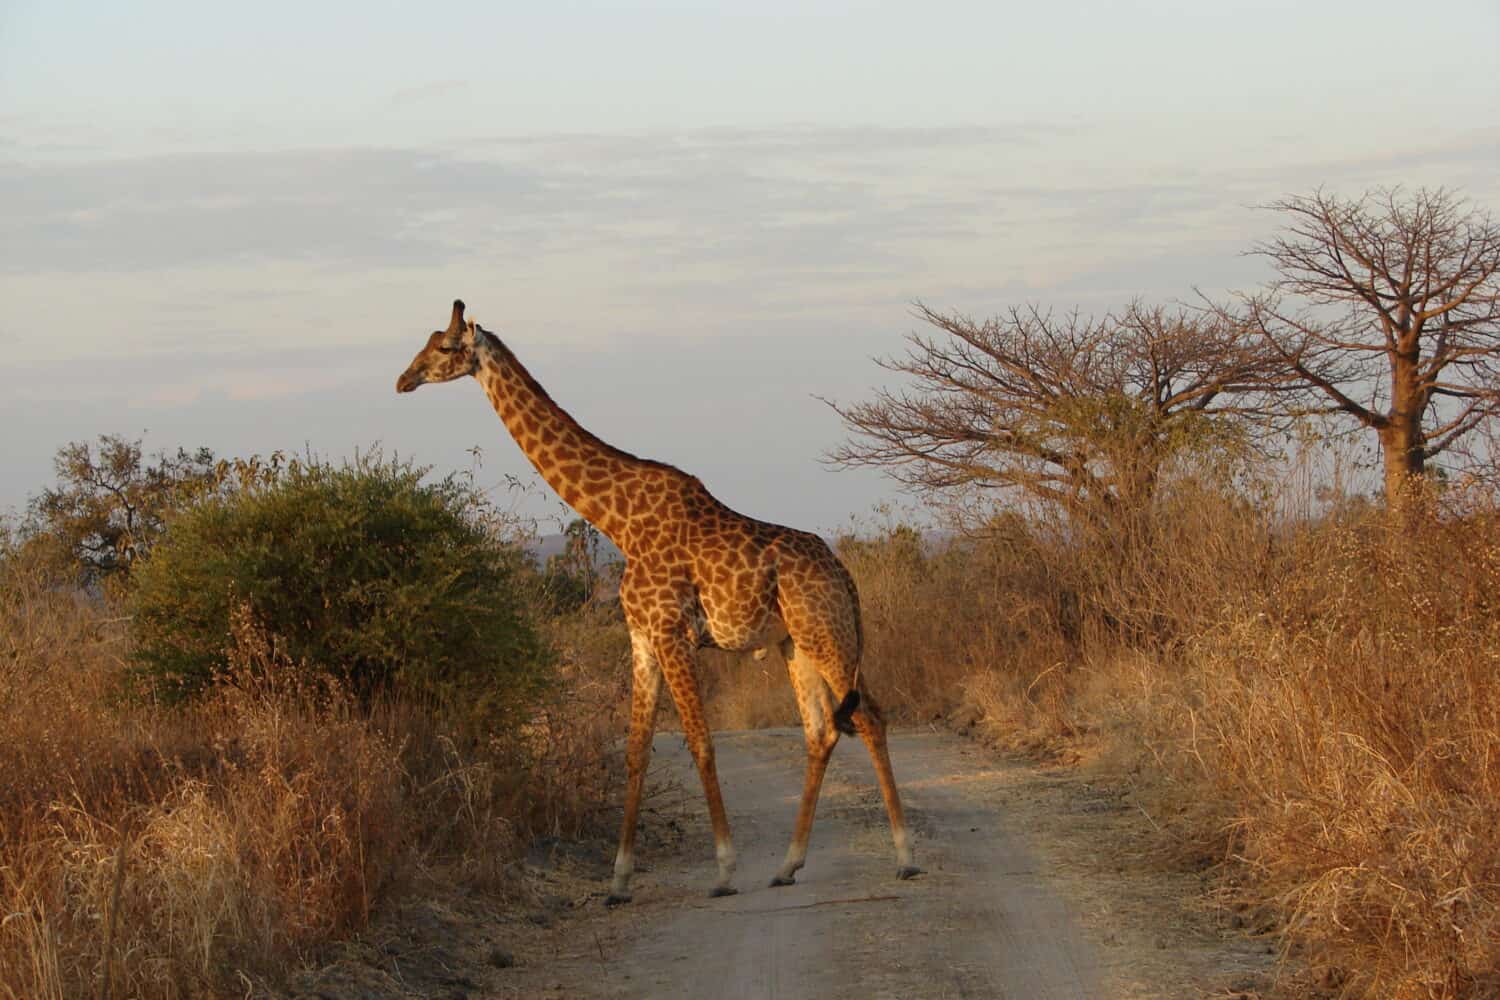 giraffe in Ruaha National Park, Tanzania